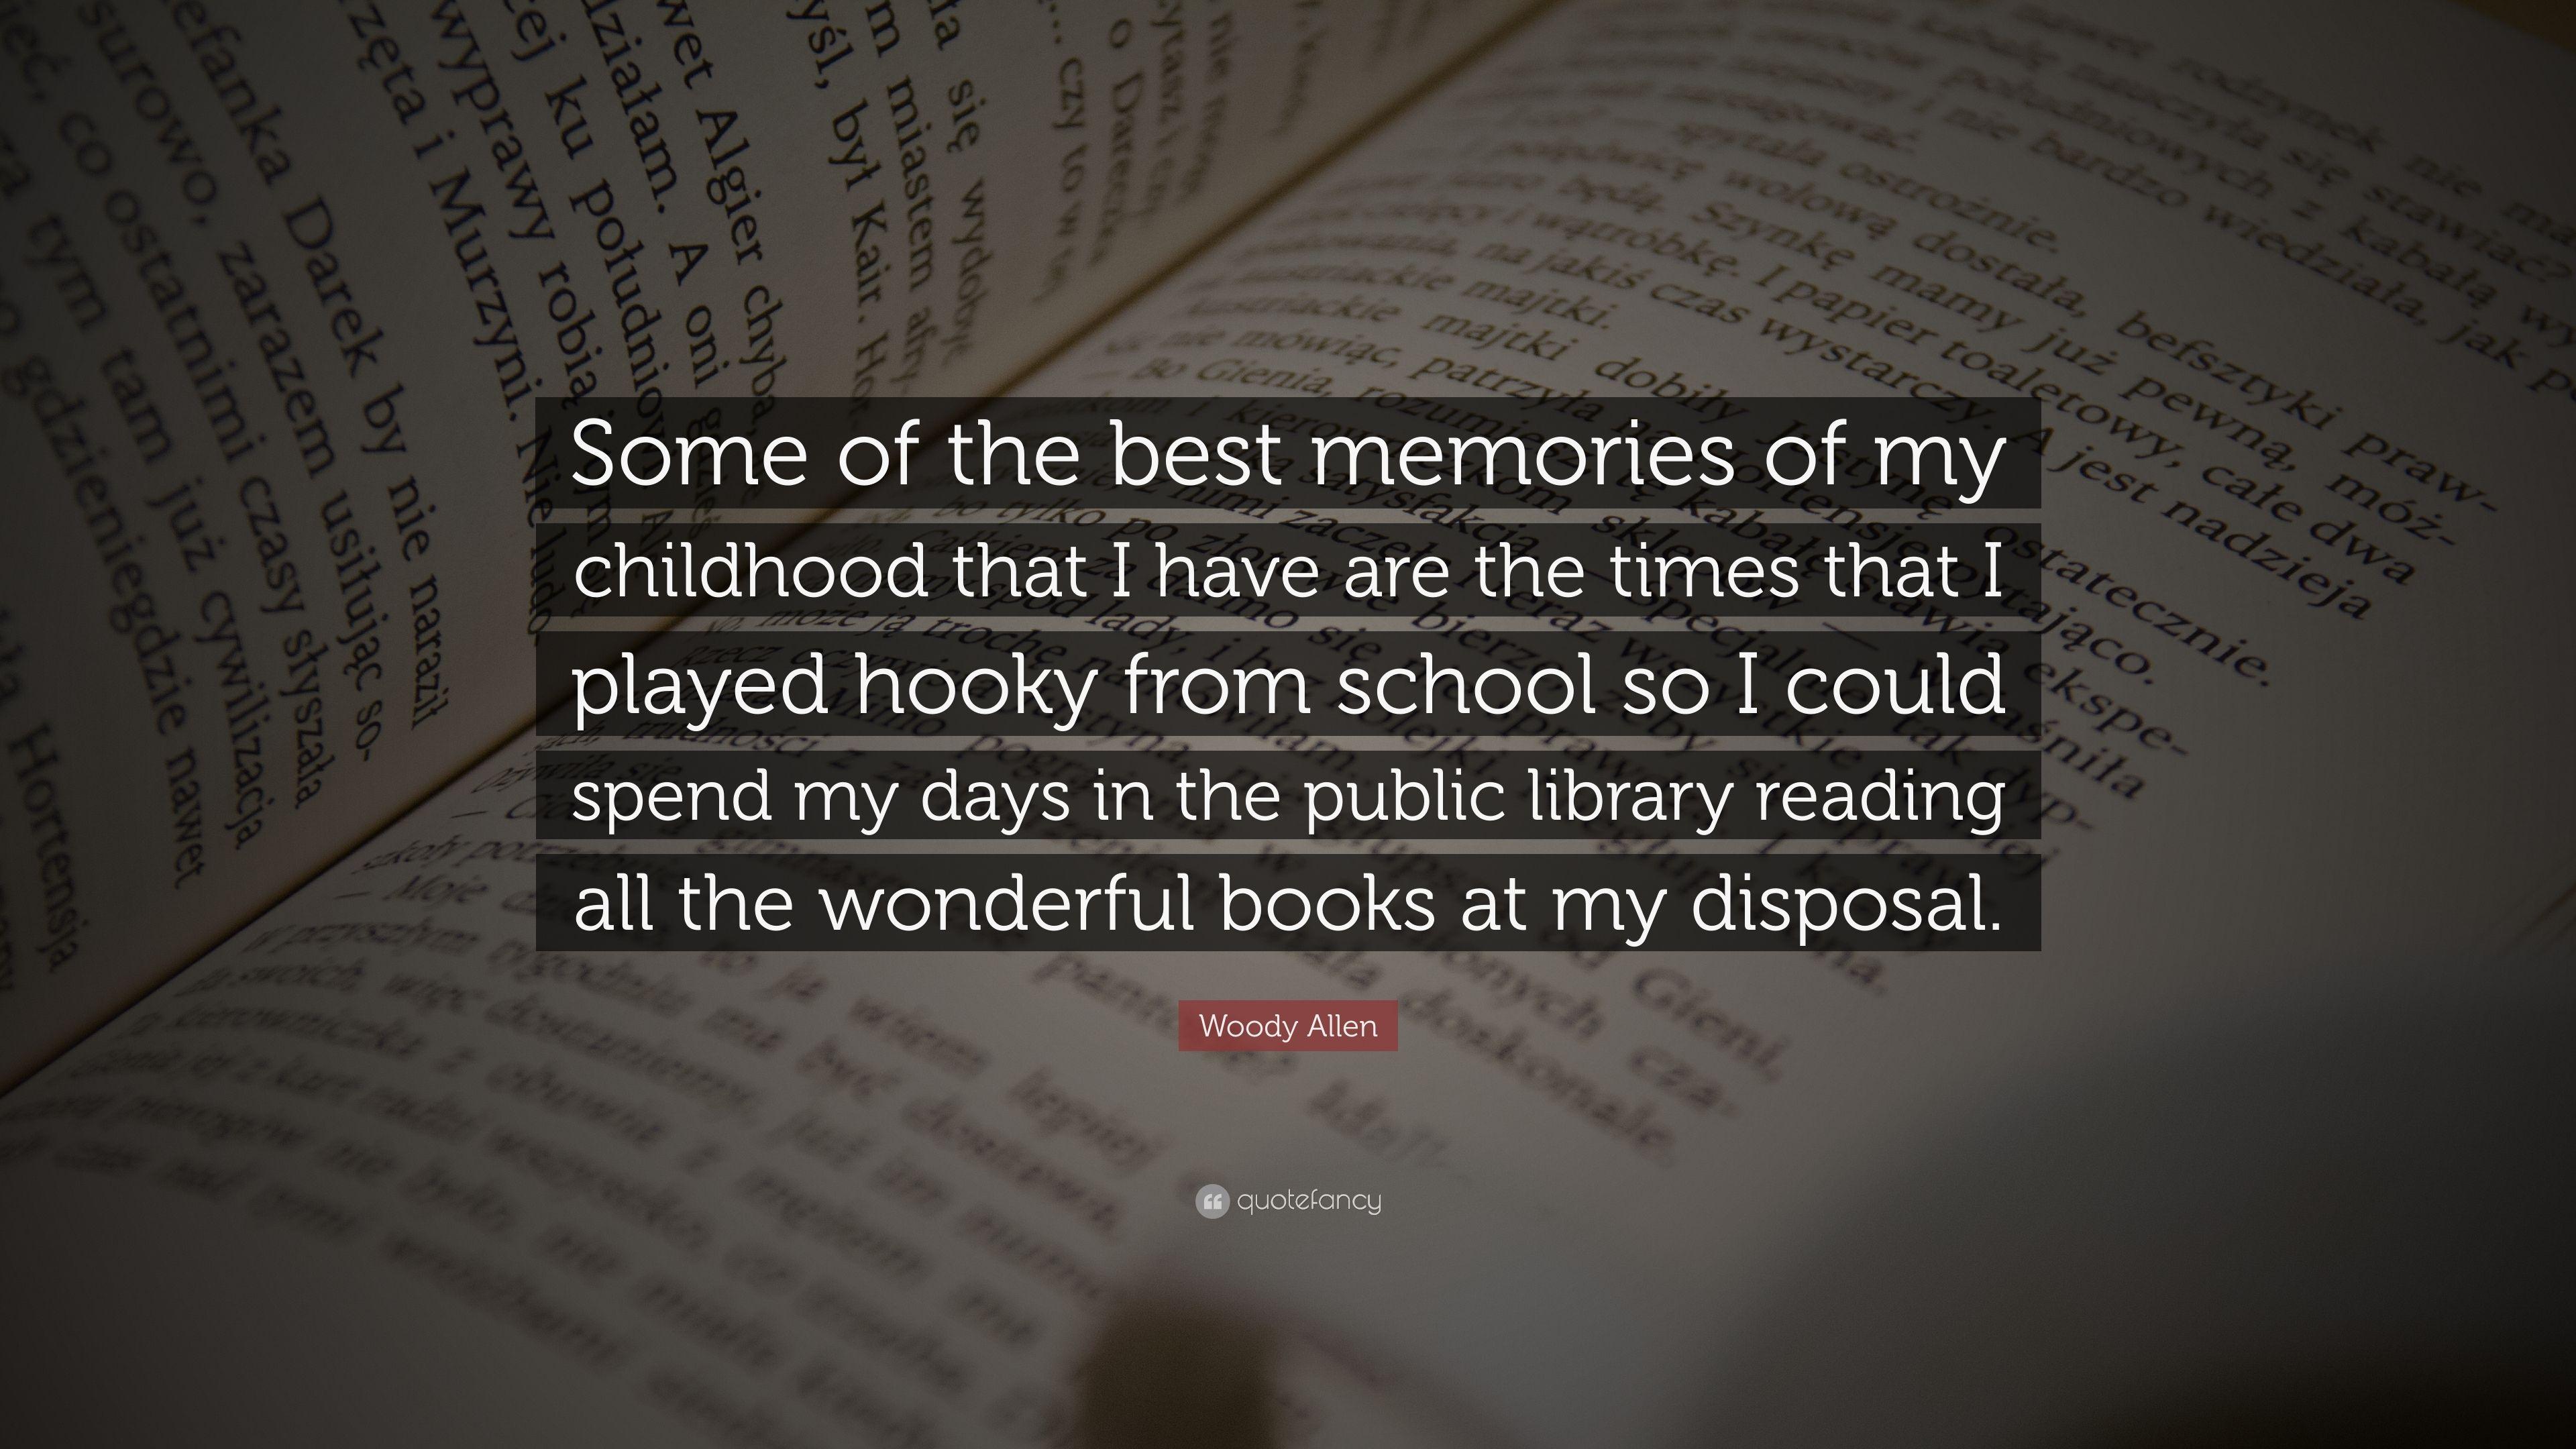 Woody Allen Quote: “Some of the best memories of my